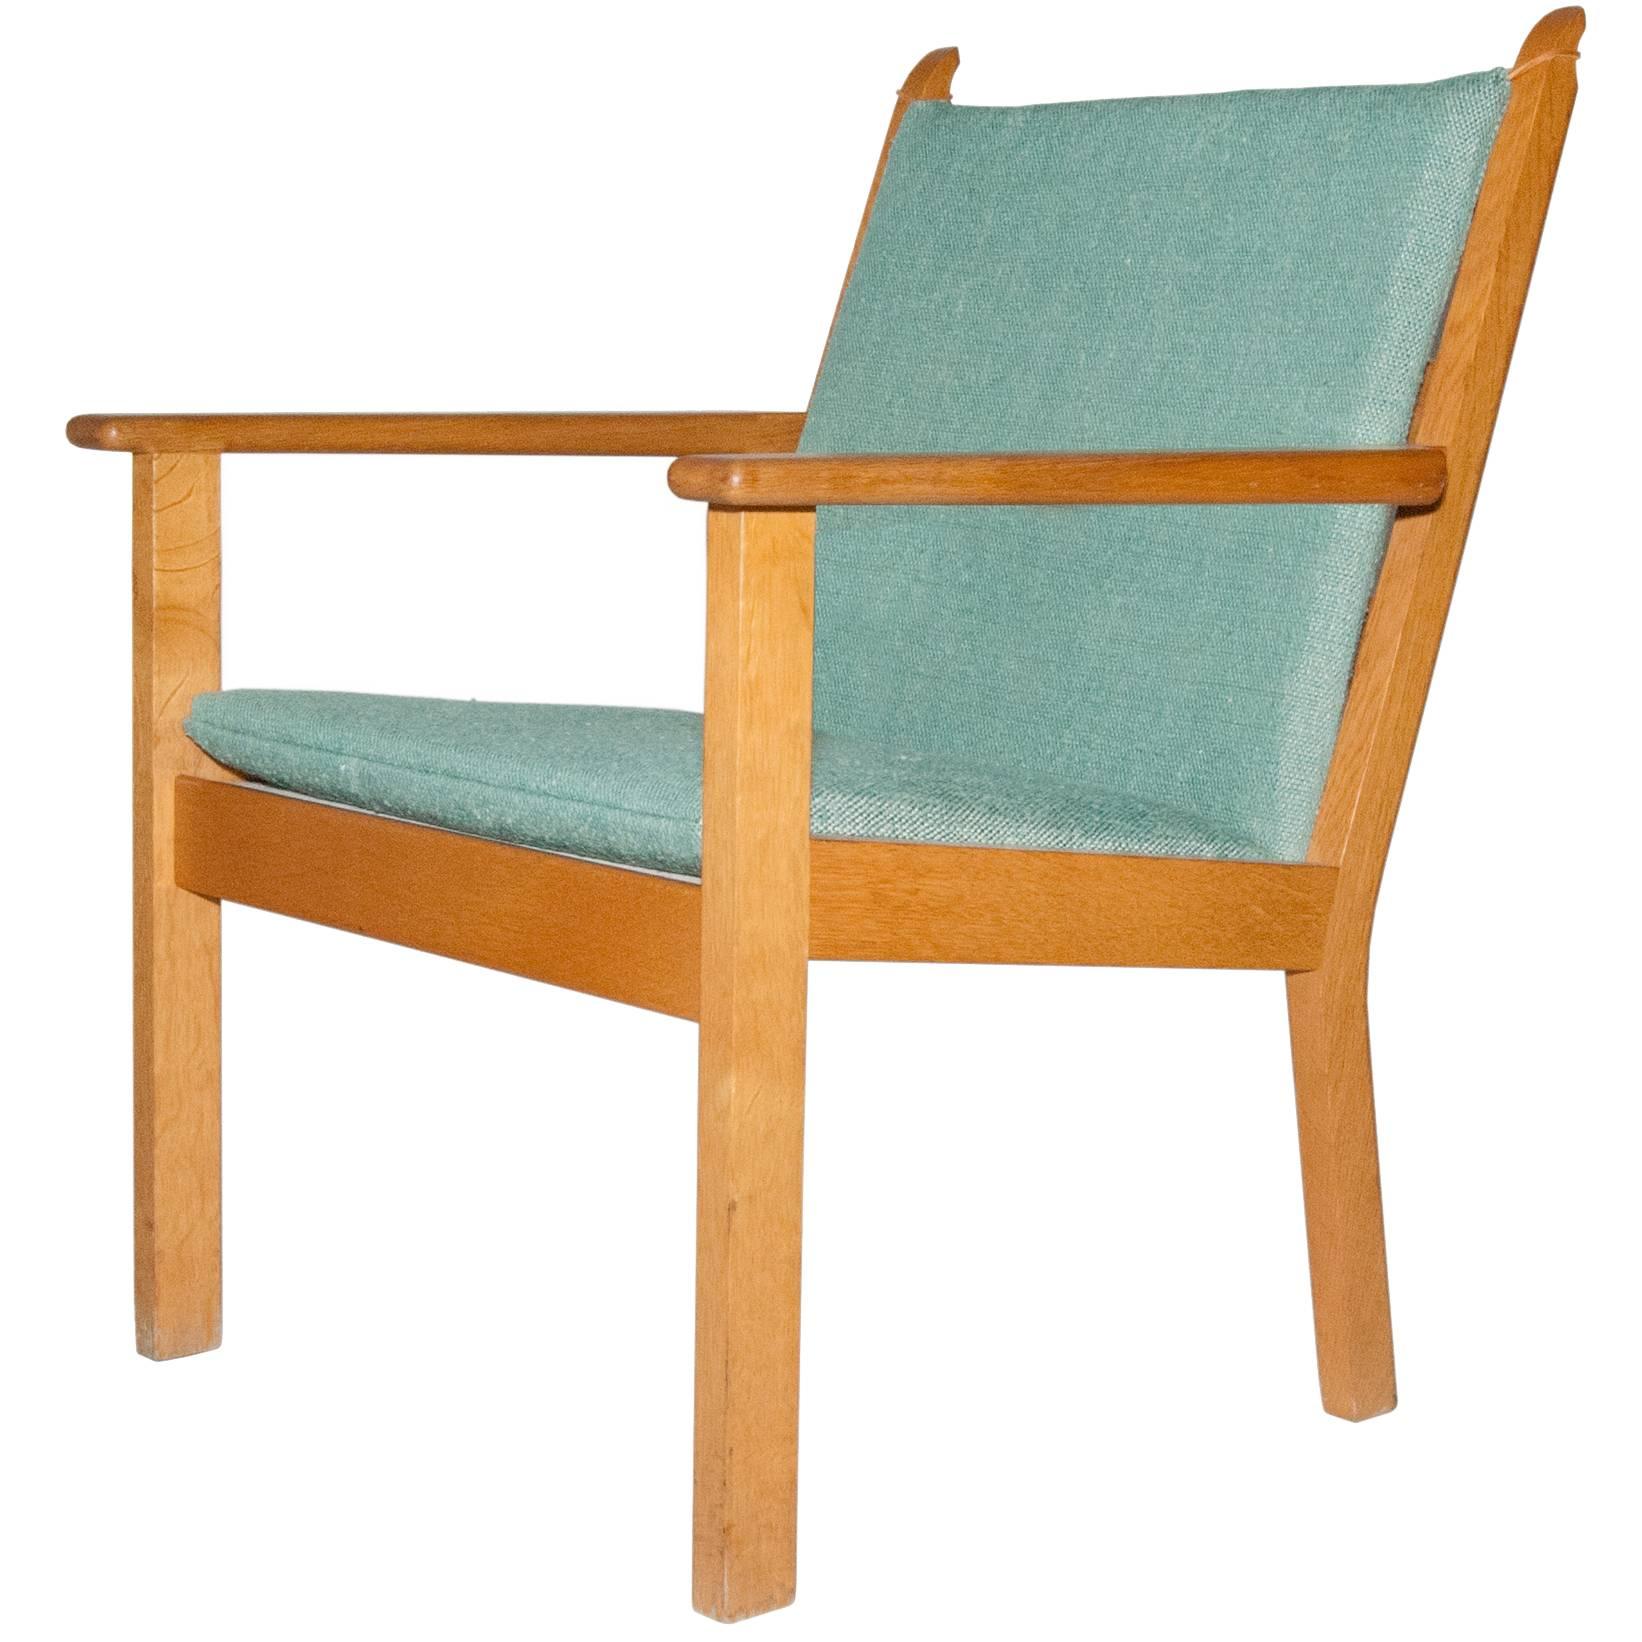 Hans J. Wegner Oak Lounge Chair by GETAMA For Sale